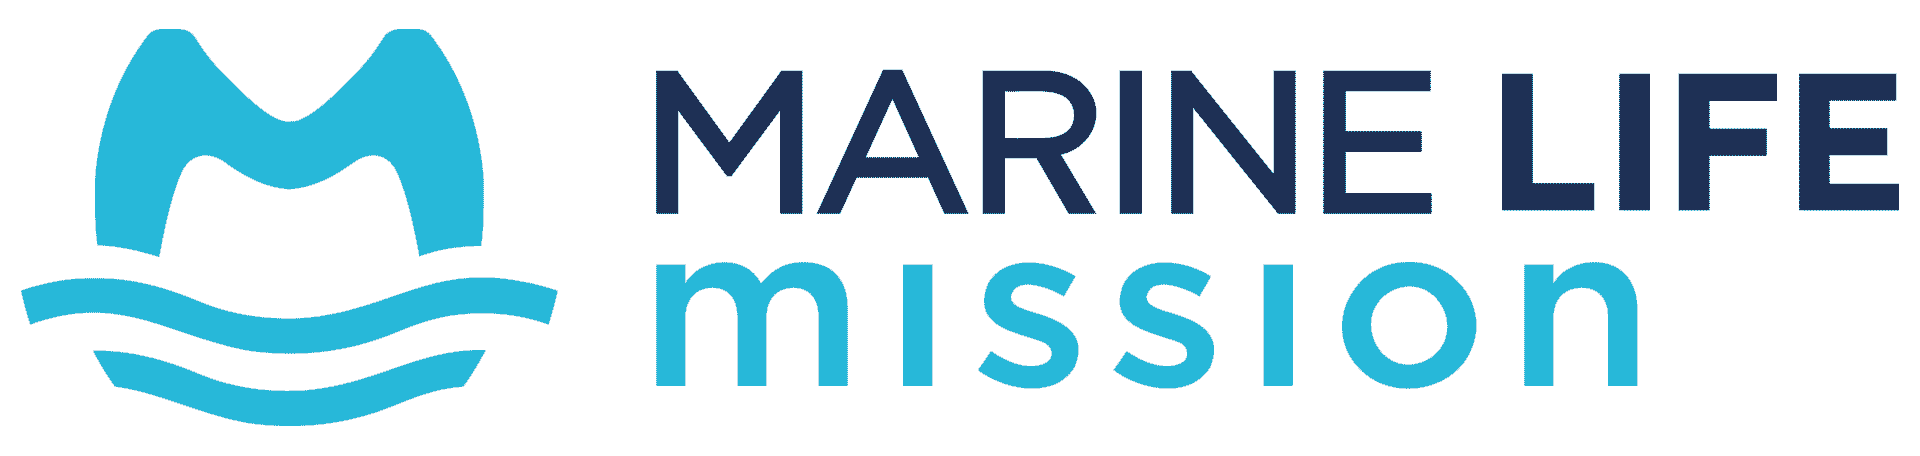 Marine Life Mission